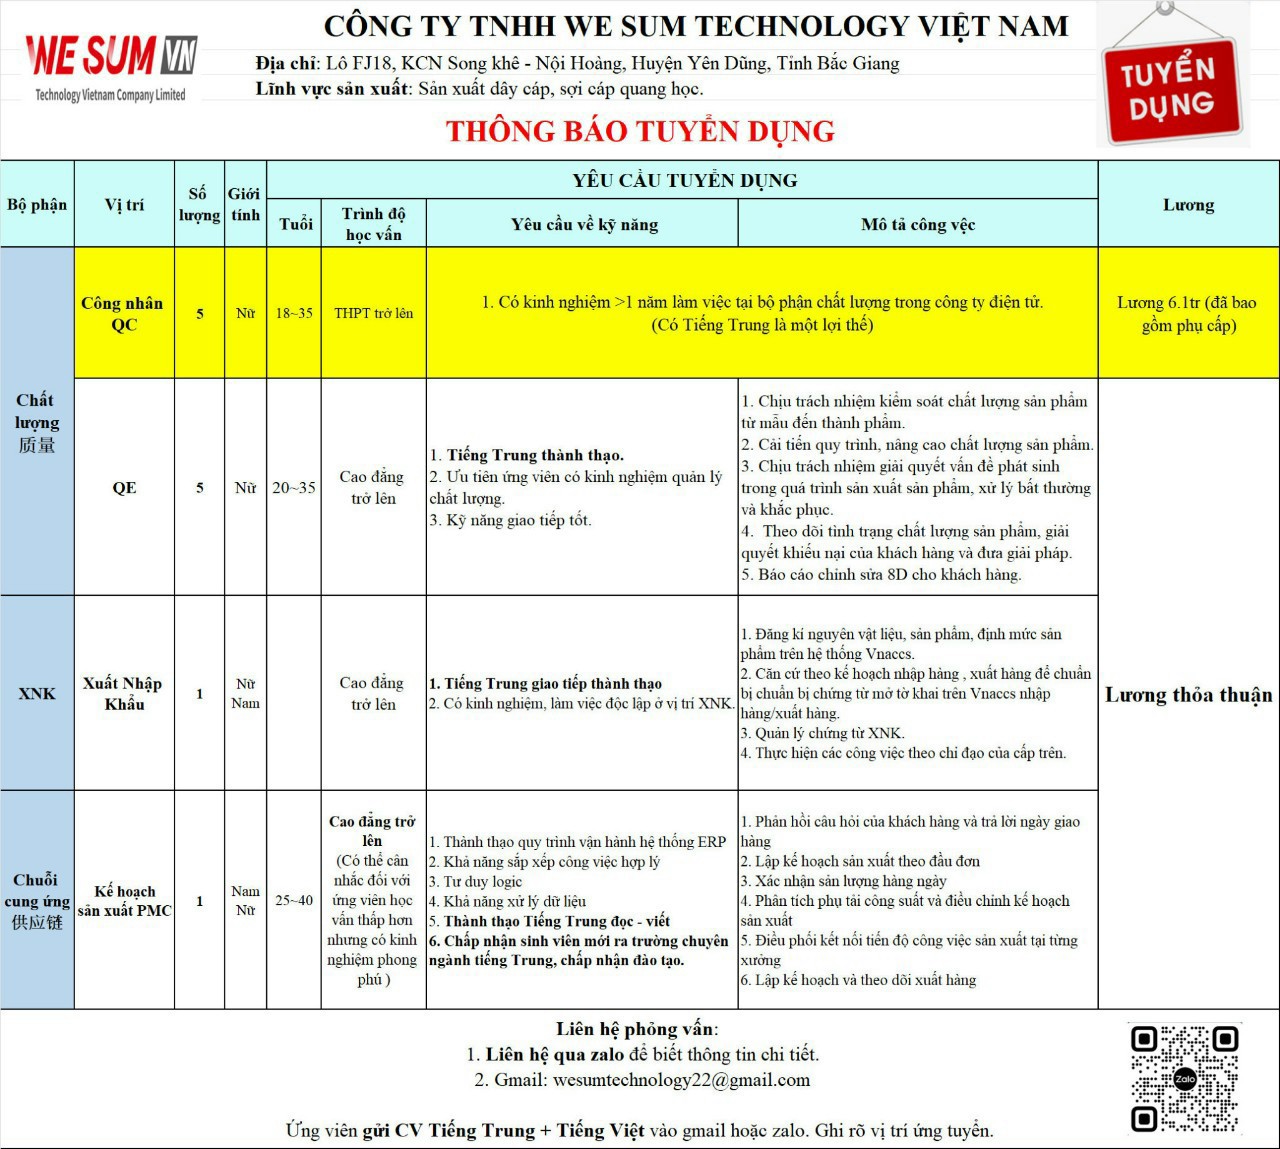 Công ty TNHH We Sum Technology Việt Nam thông báo tuyển dụng lao động